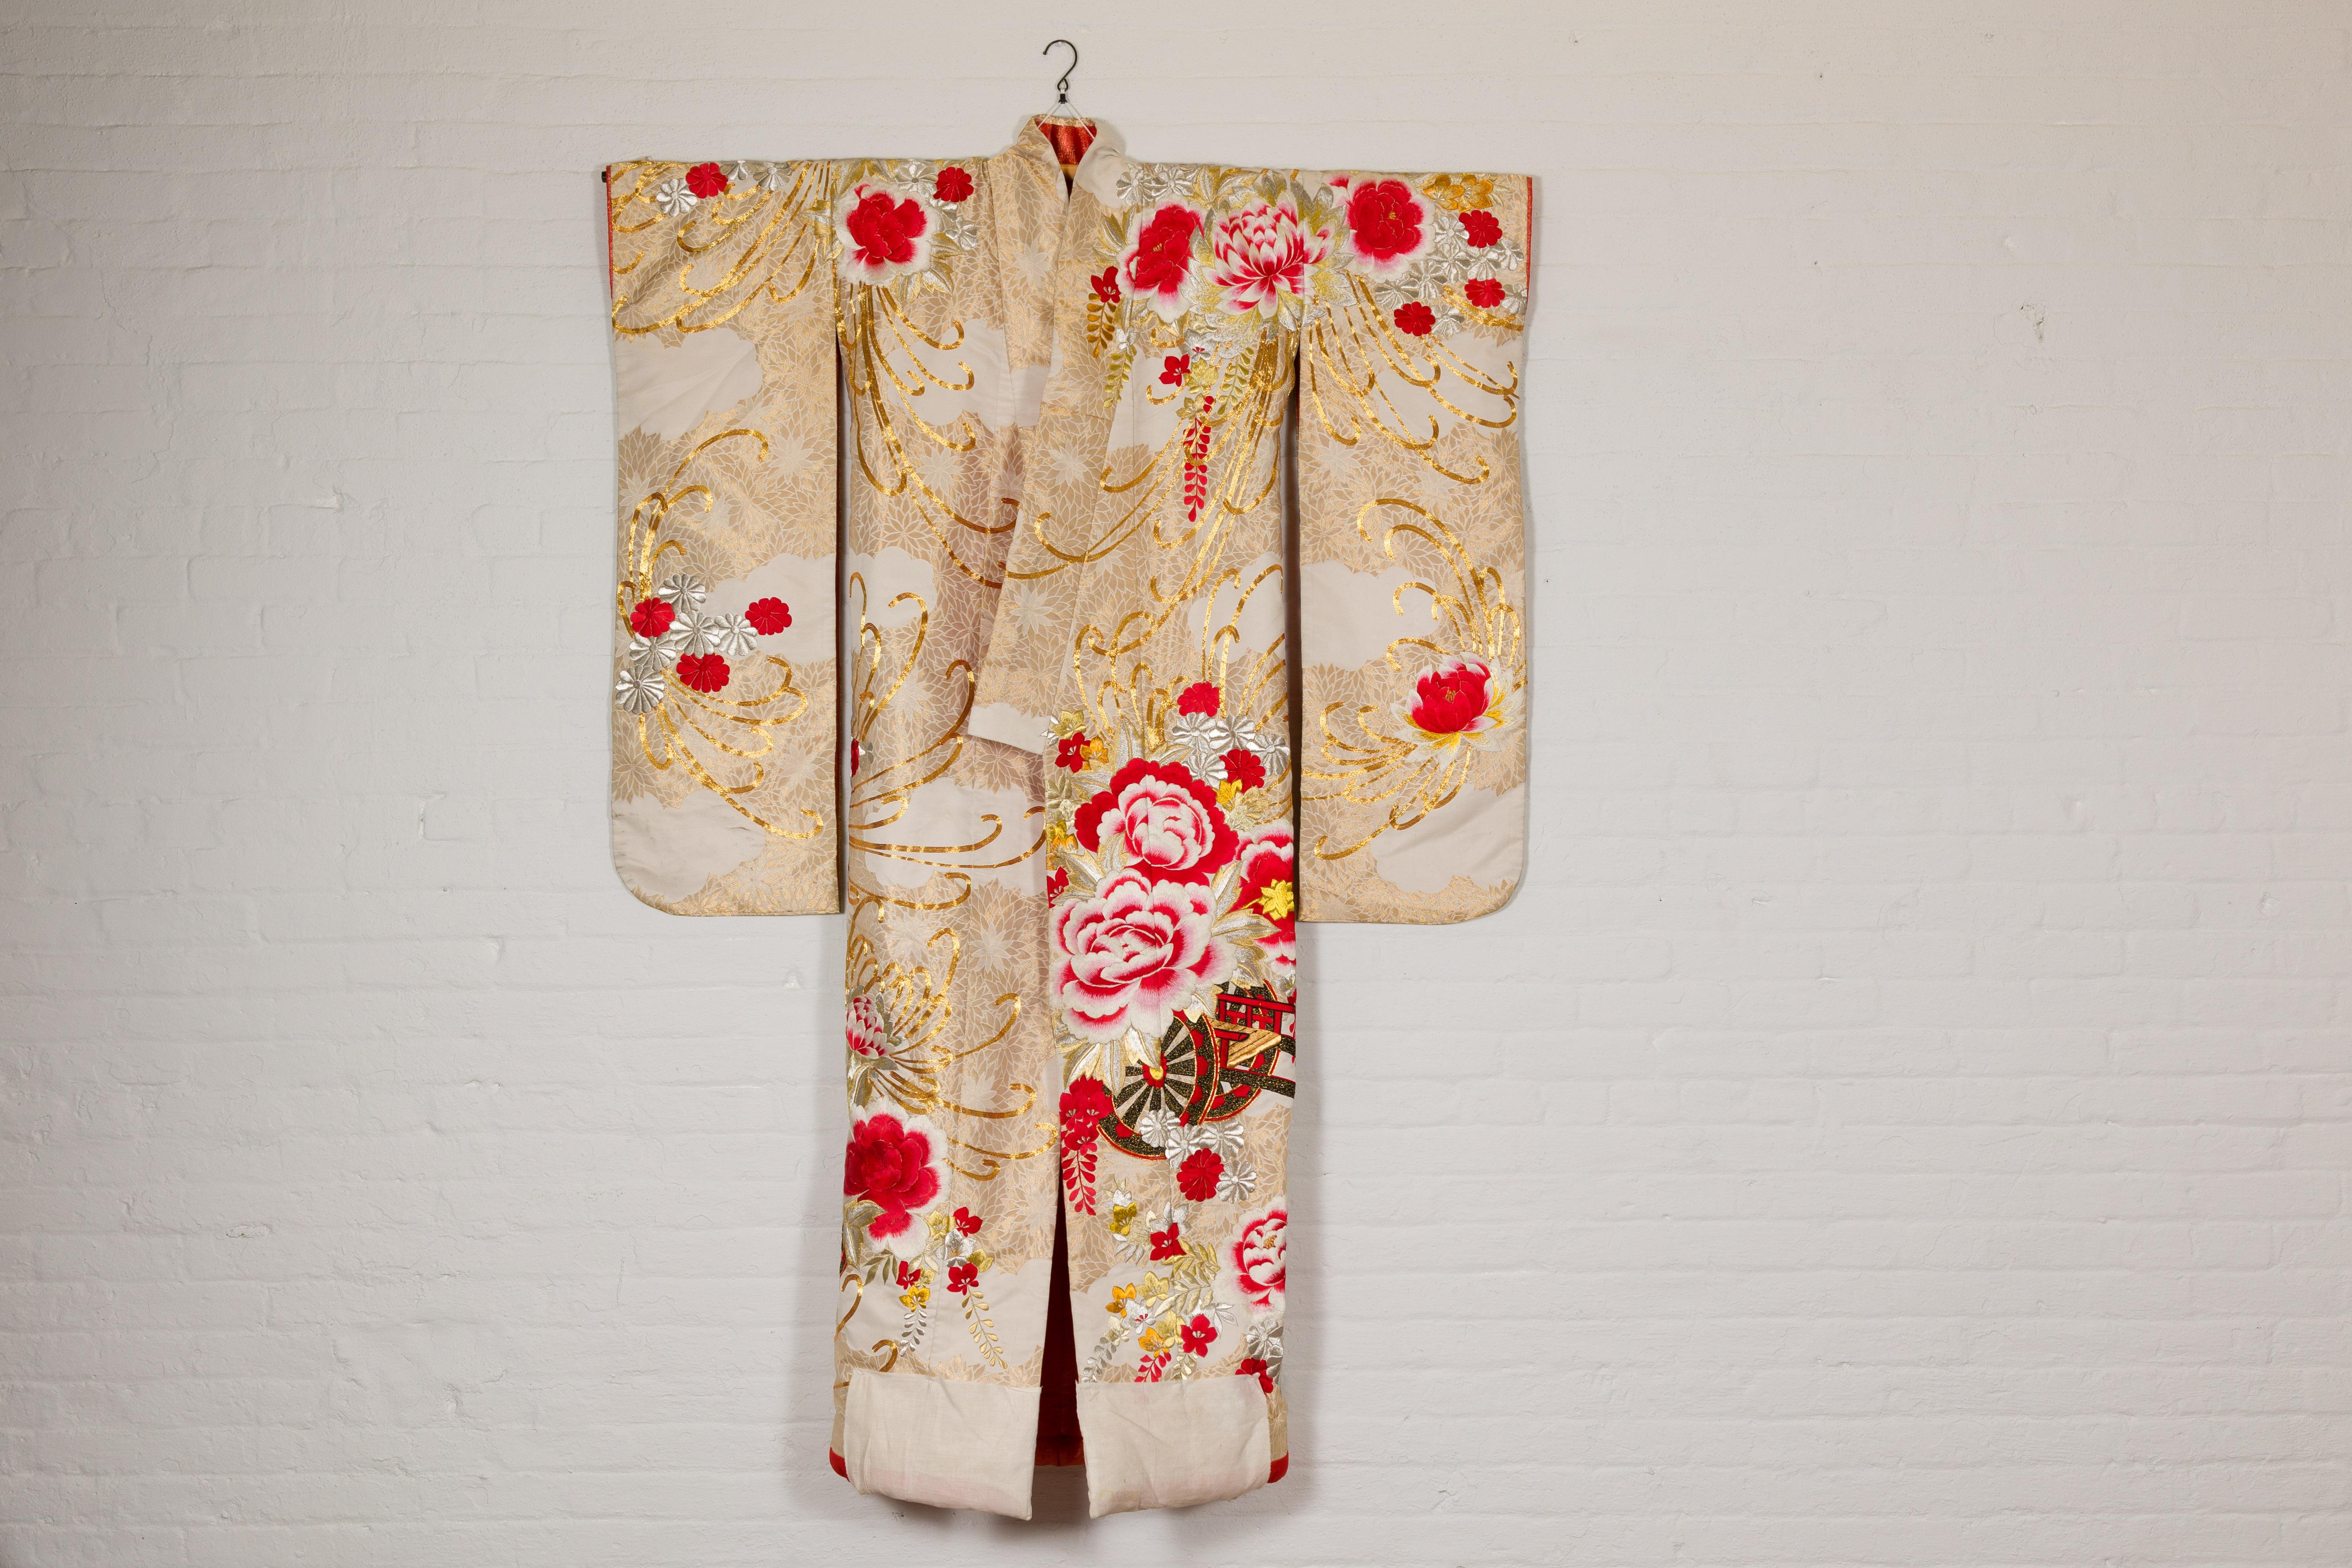 Ein handgefertigter japanischer Hochzeitskimono aus Seidenbrokat aus der Showa-Ära (ca. 1940) mit aufwendigen handgestickten Details, die große Blumen und einen Wagen darstellen. Dieser japanische Hochzeitskimono aus der Showa-Ära (ca. 1940) ist der